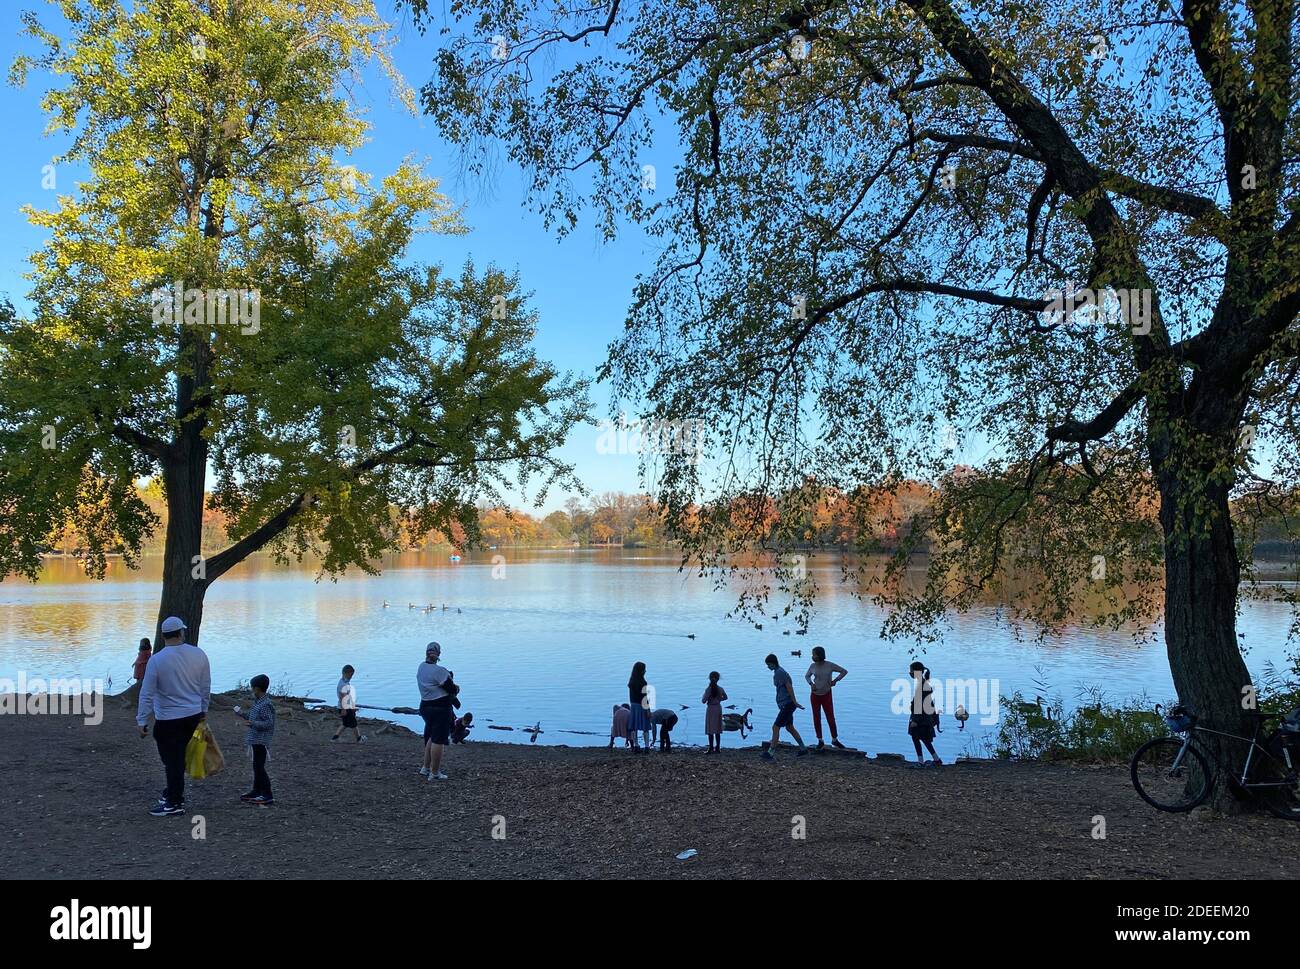 Die Menschen genießen einen warmen Herbsttag im Prospect Park, während die Covid-19 Pandemie weiter wütet. Auch im Park tragen die meisten Menschen Gesichtsmasken und soziale Distanz. Stockfoto